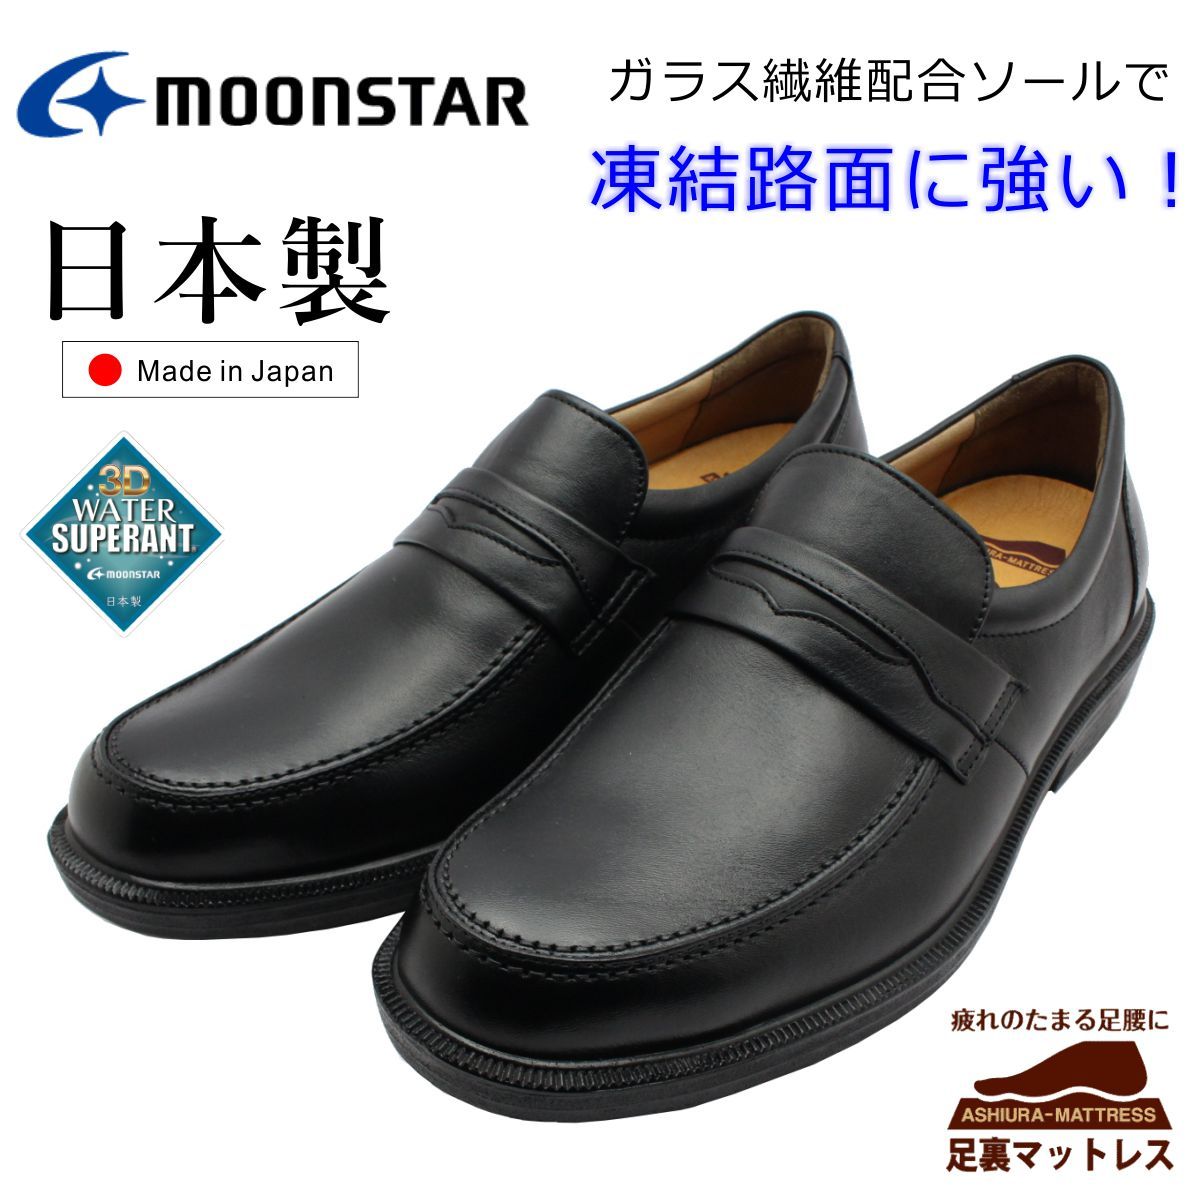 MOONSTAR ムーンスター メンズ 撥水 防滑ソール 4E ローファー ビジネスシューズ カジュアル SPH4502WSR 靴 日本製 ブラック